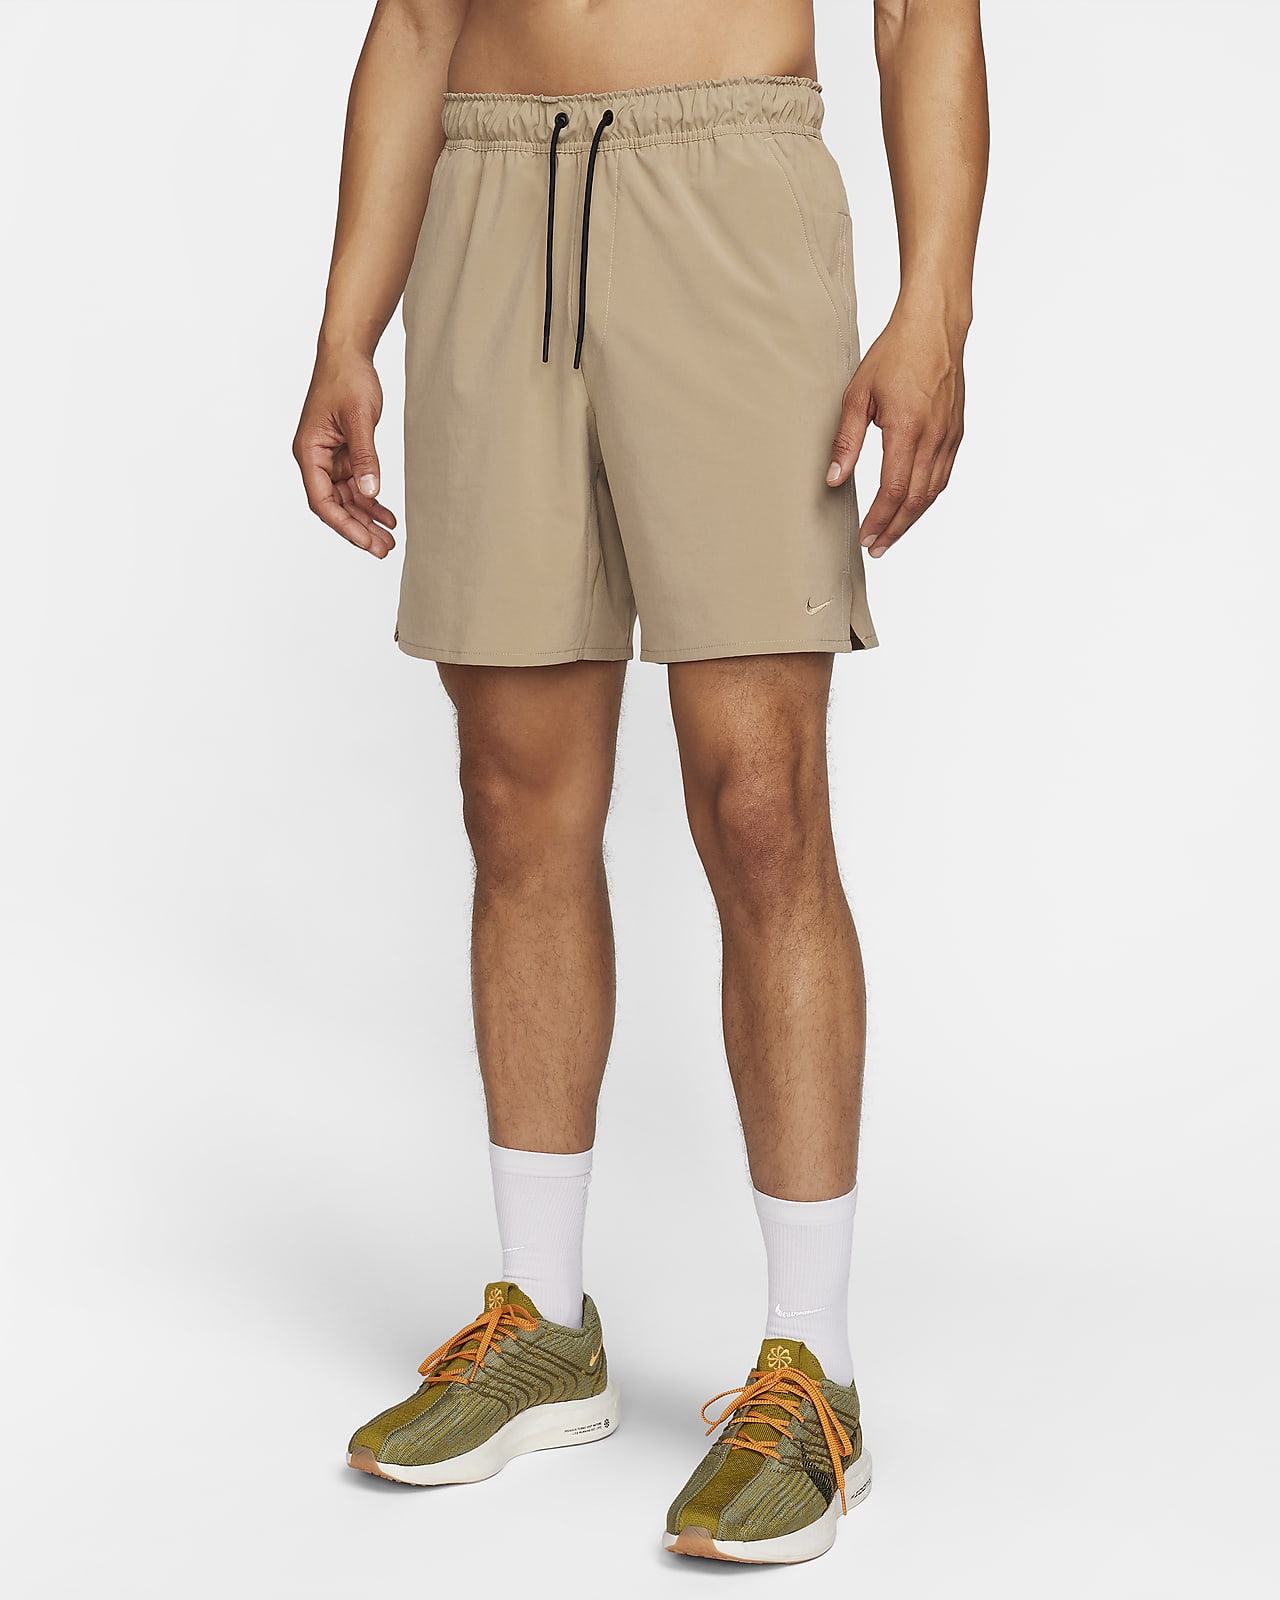 Nike Unlimited Pantalons curts Dri-FIT versàtils sense folre de 18 cm - Home